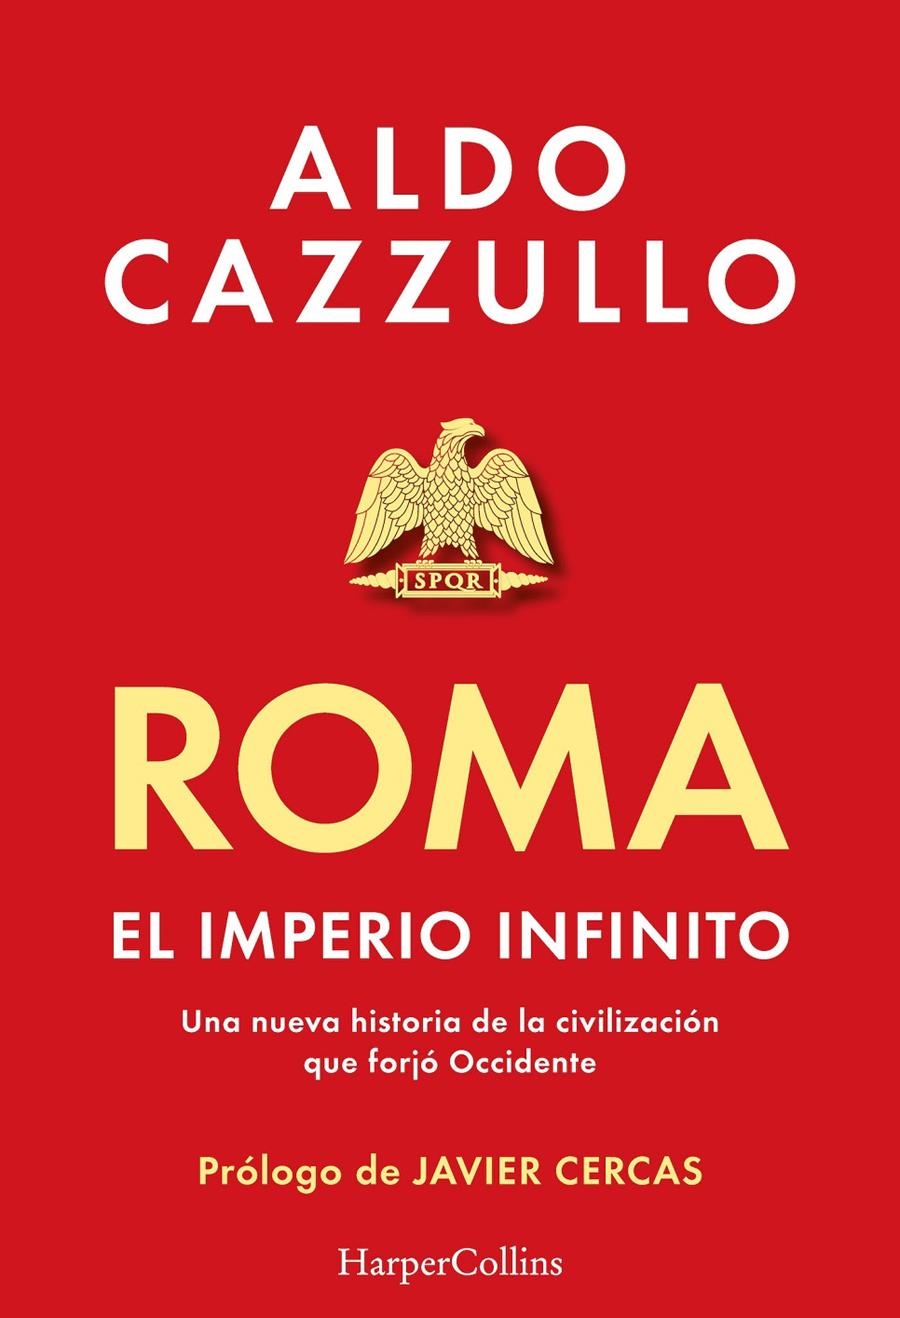 ROMA: EL IMPERIO INFINITO [RUSTICA] | CAZZULLO, ALDO | Akira Comics  - libreria donde comprar comics, juegos y libros online